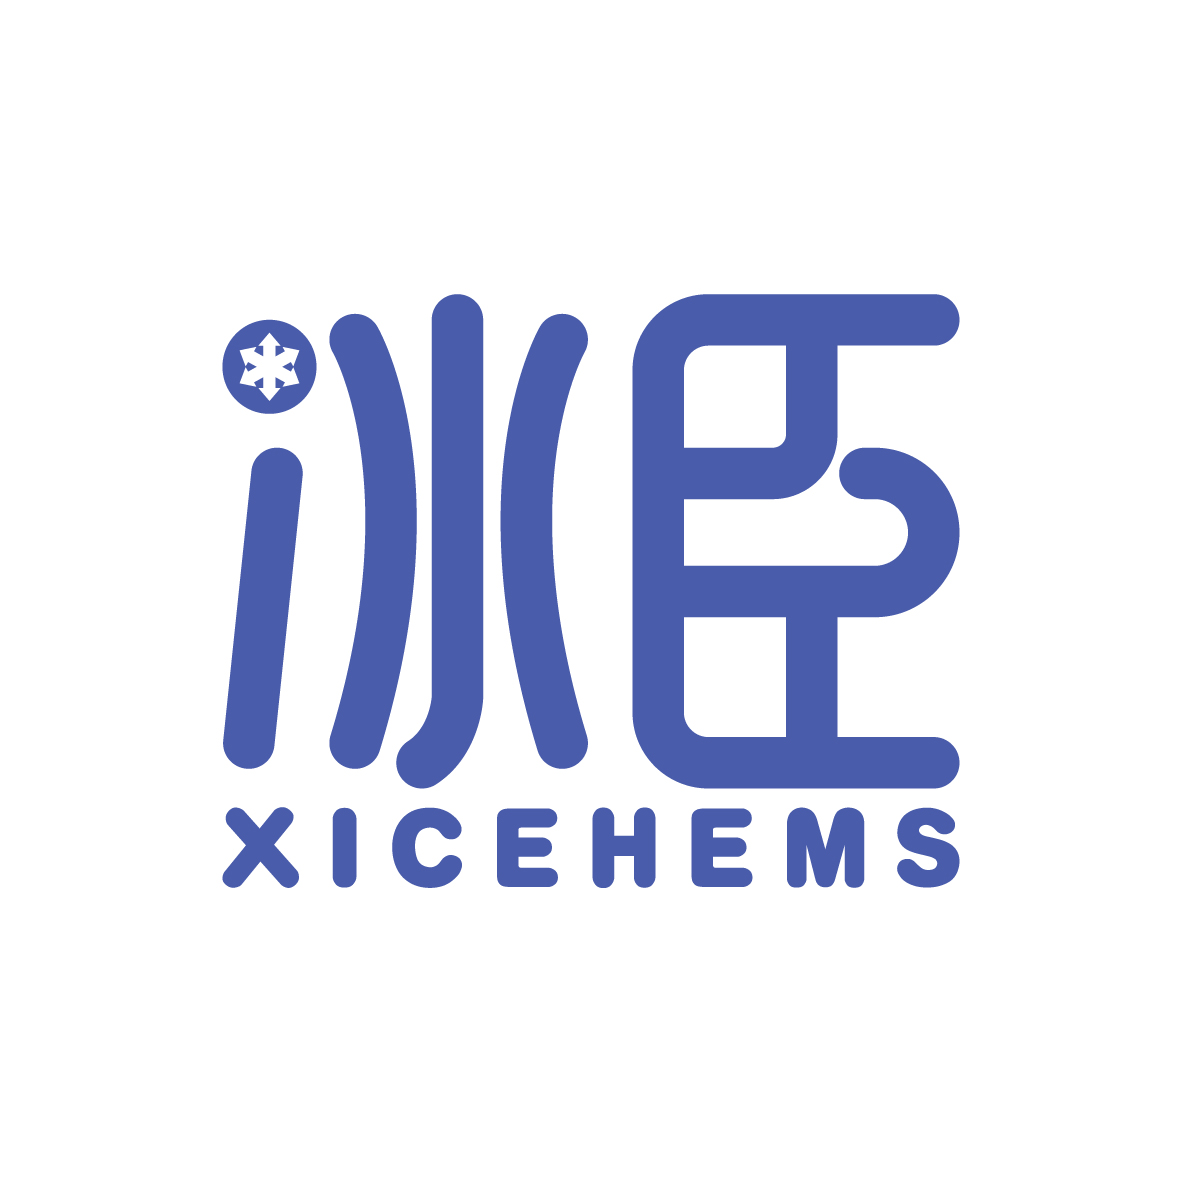 陶跃辉商标冰臣 XICEHEMS（43类）商标转让费用及联系方式